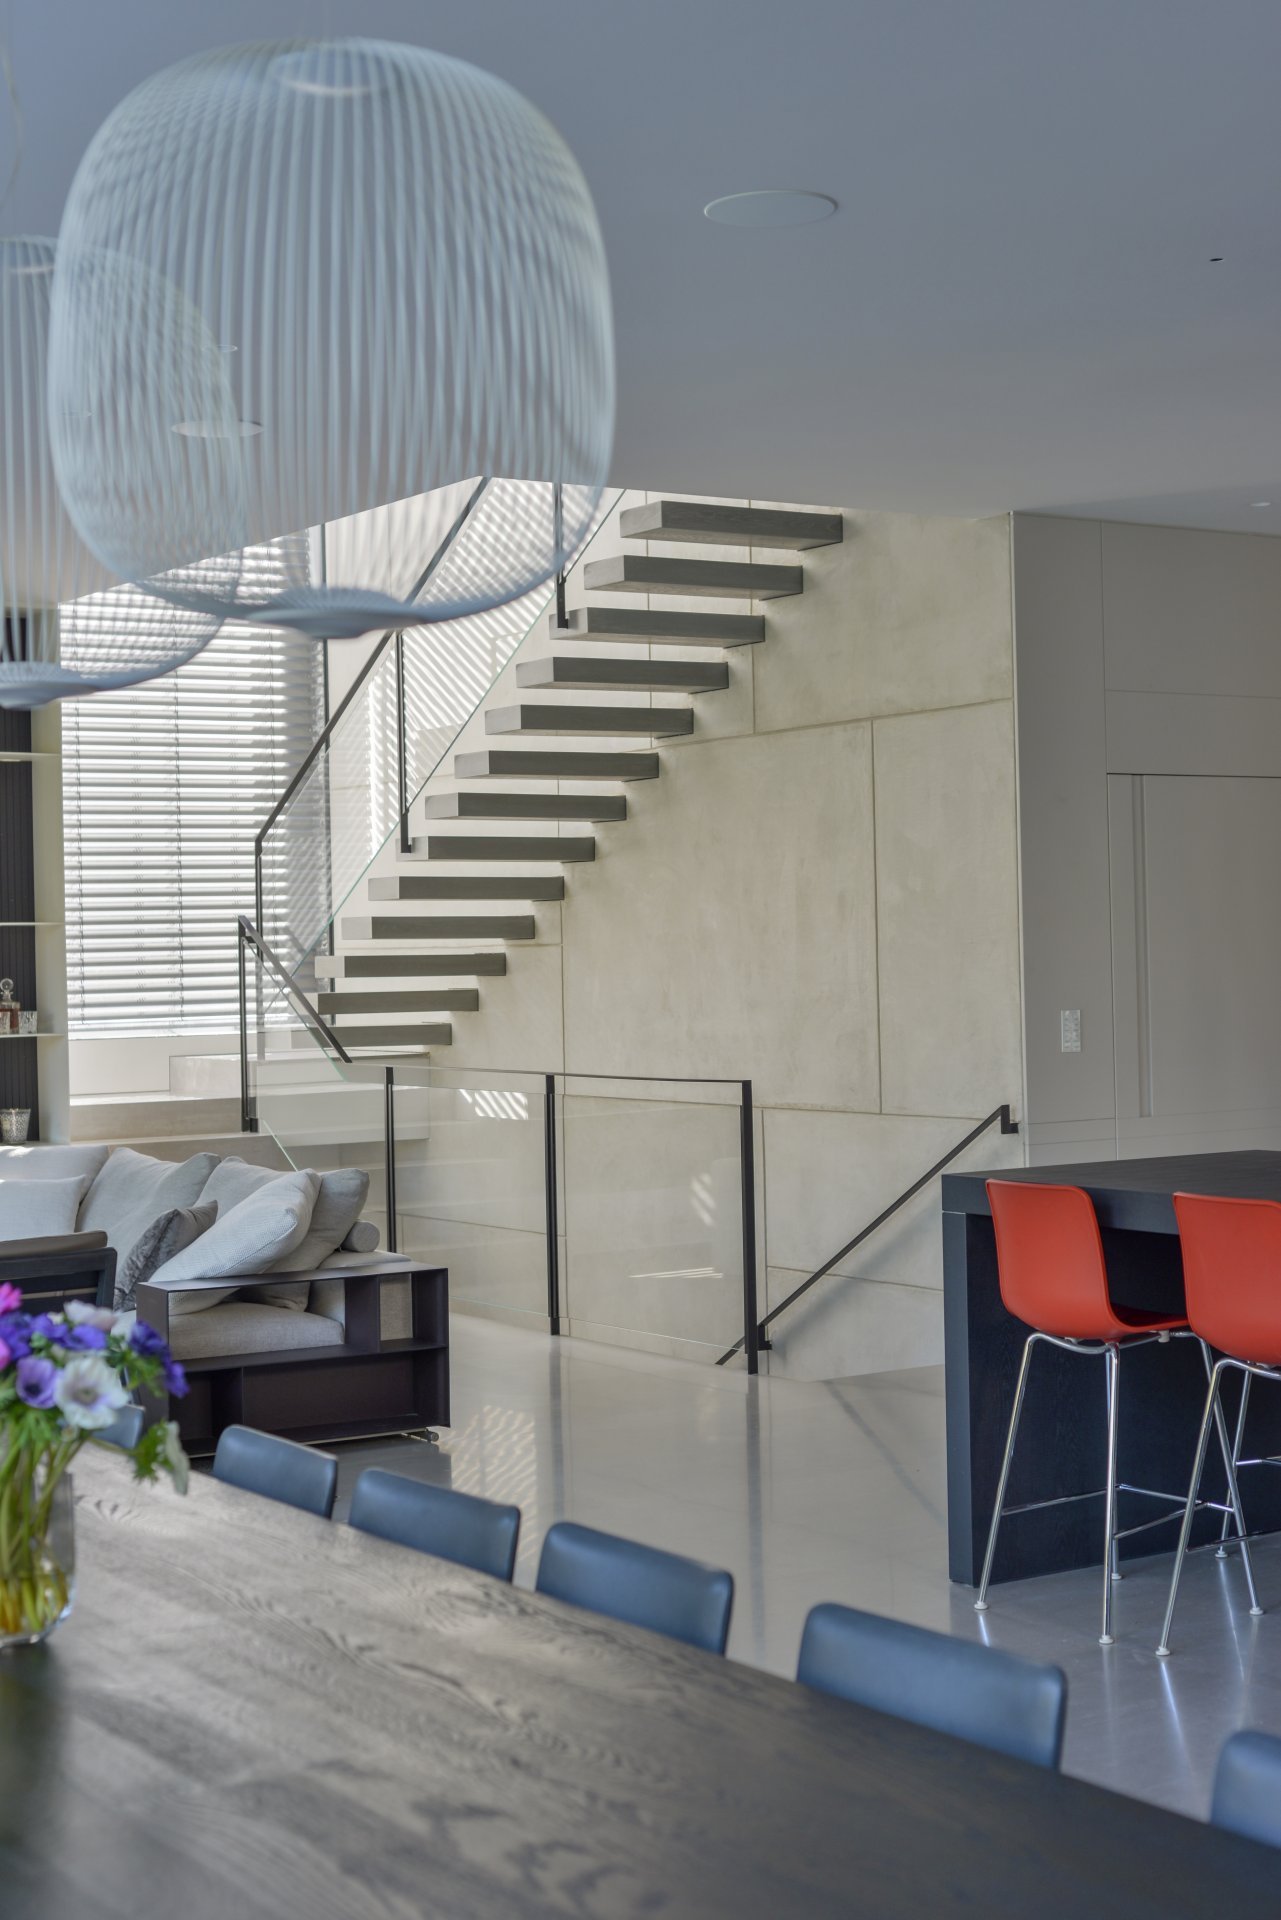 מדרגות מרחפות עץ אלון אמריקאי מגוון עם מעקה ברזל וזכוכית